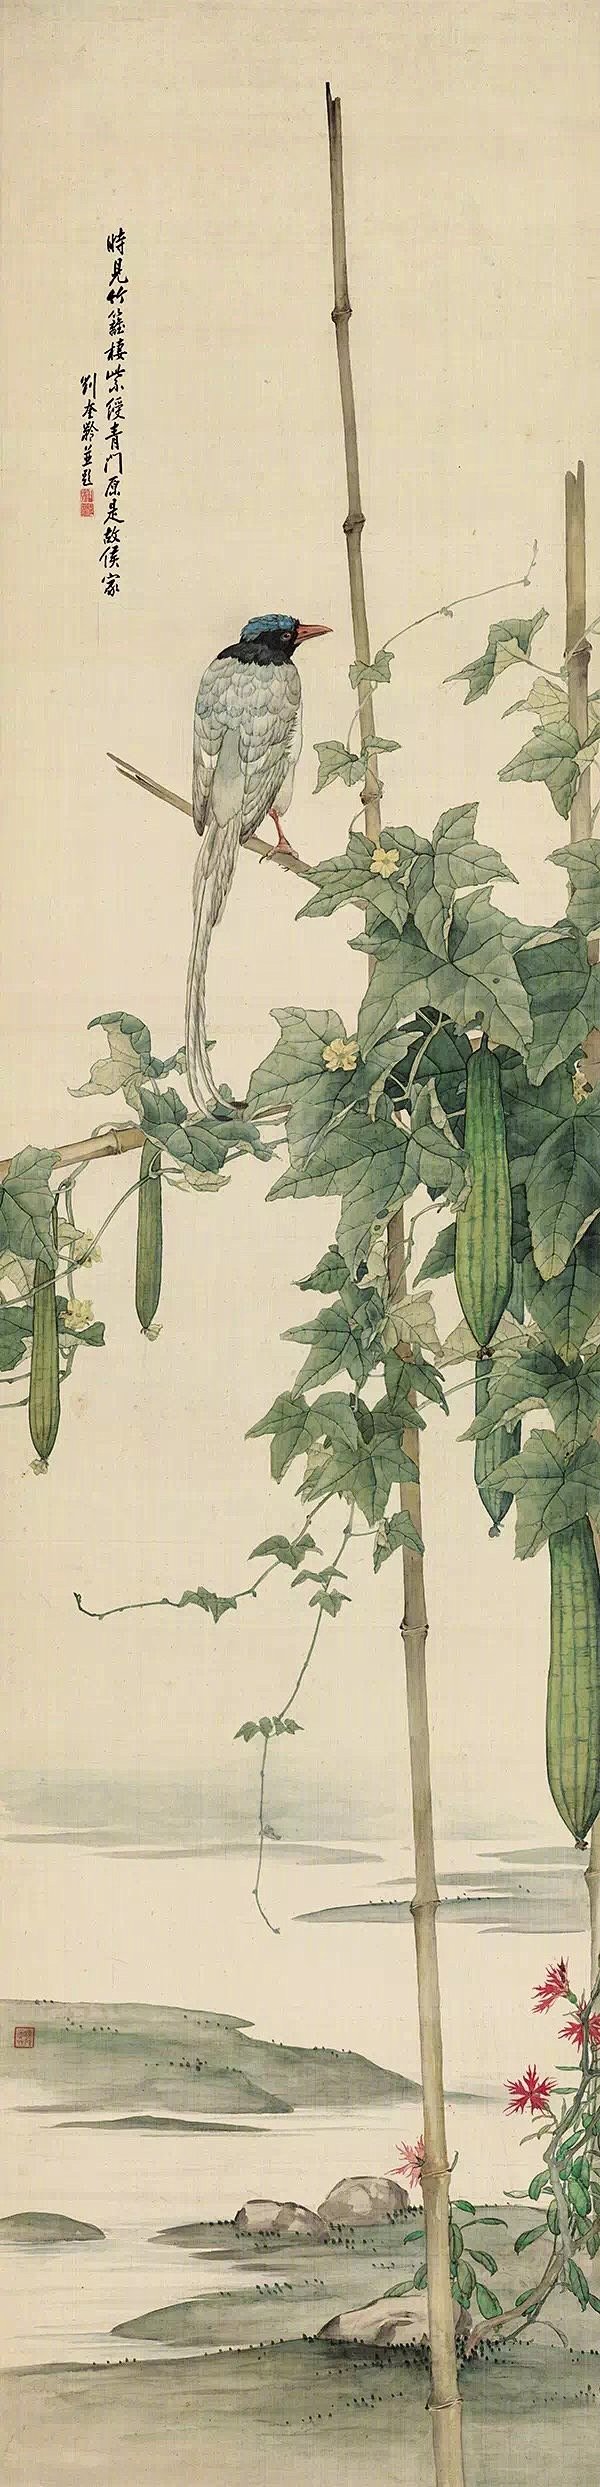 经典之作，刘奎龄绘《花禽十二条屏》作品。...